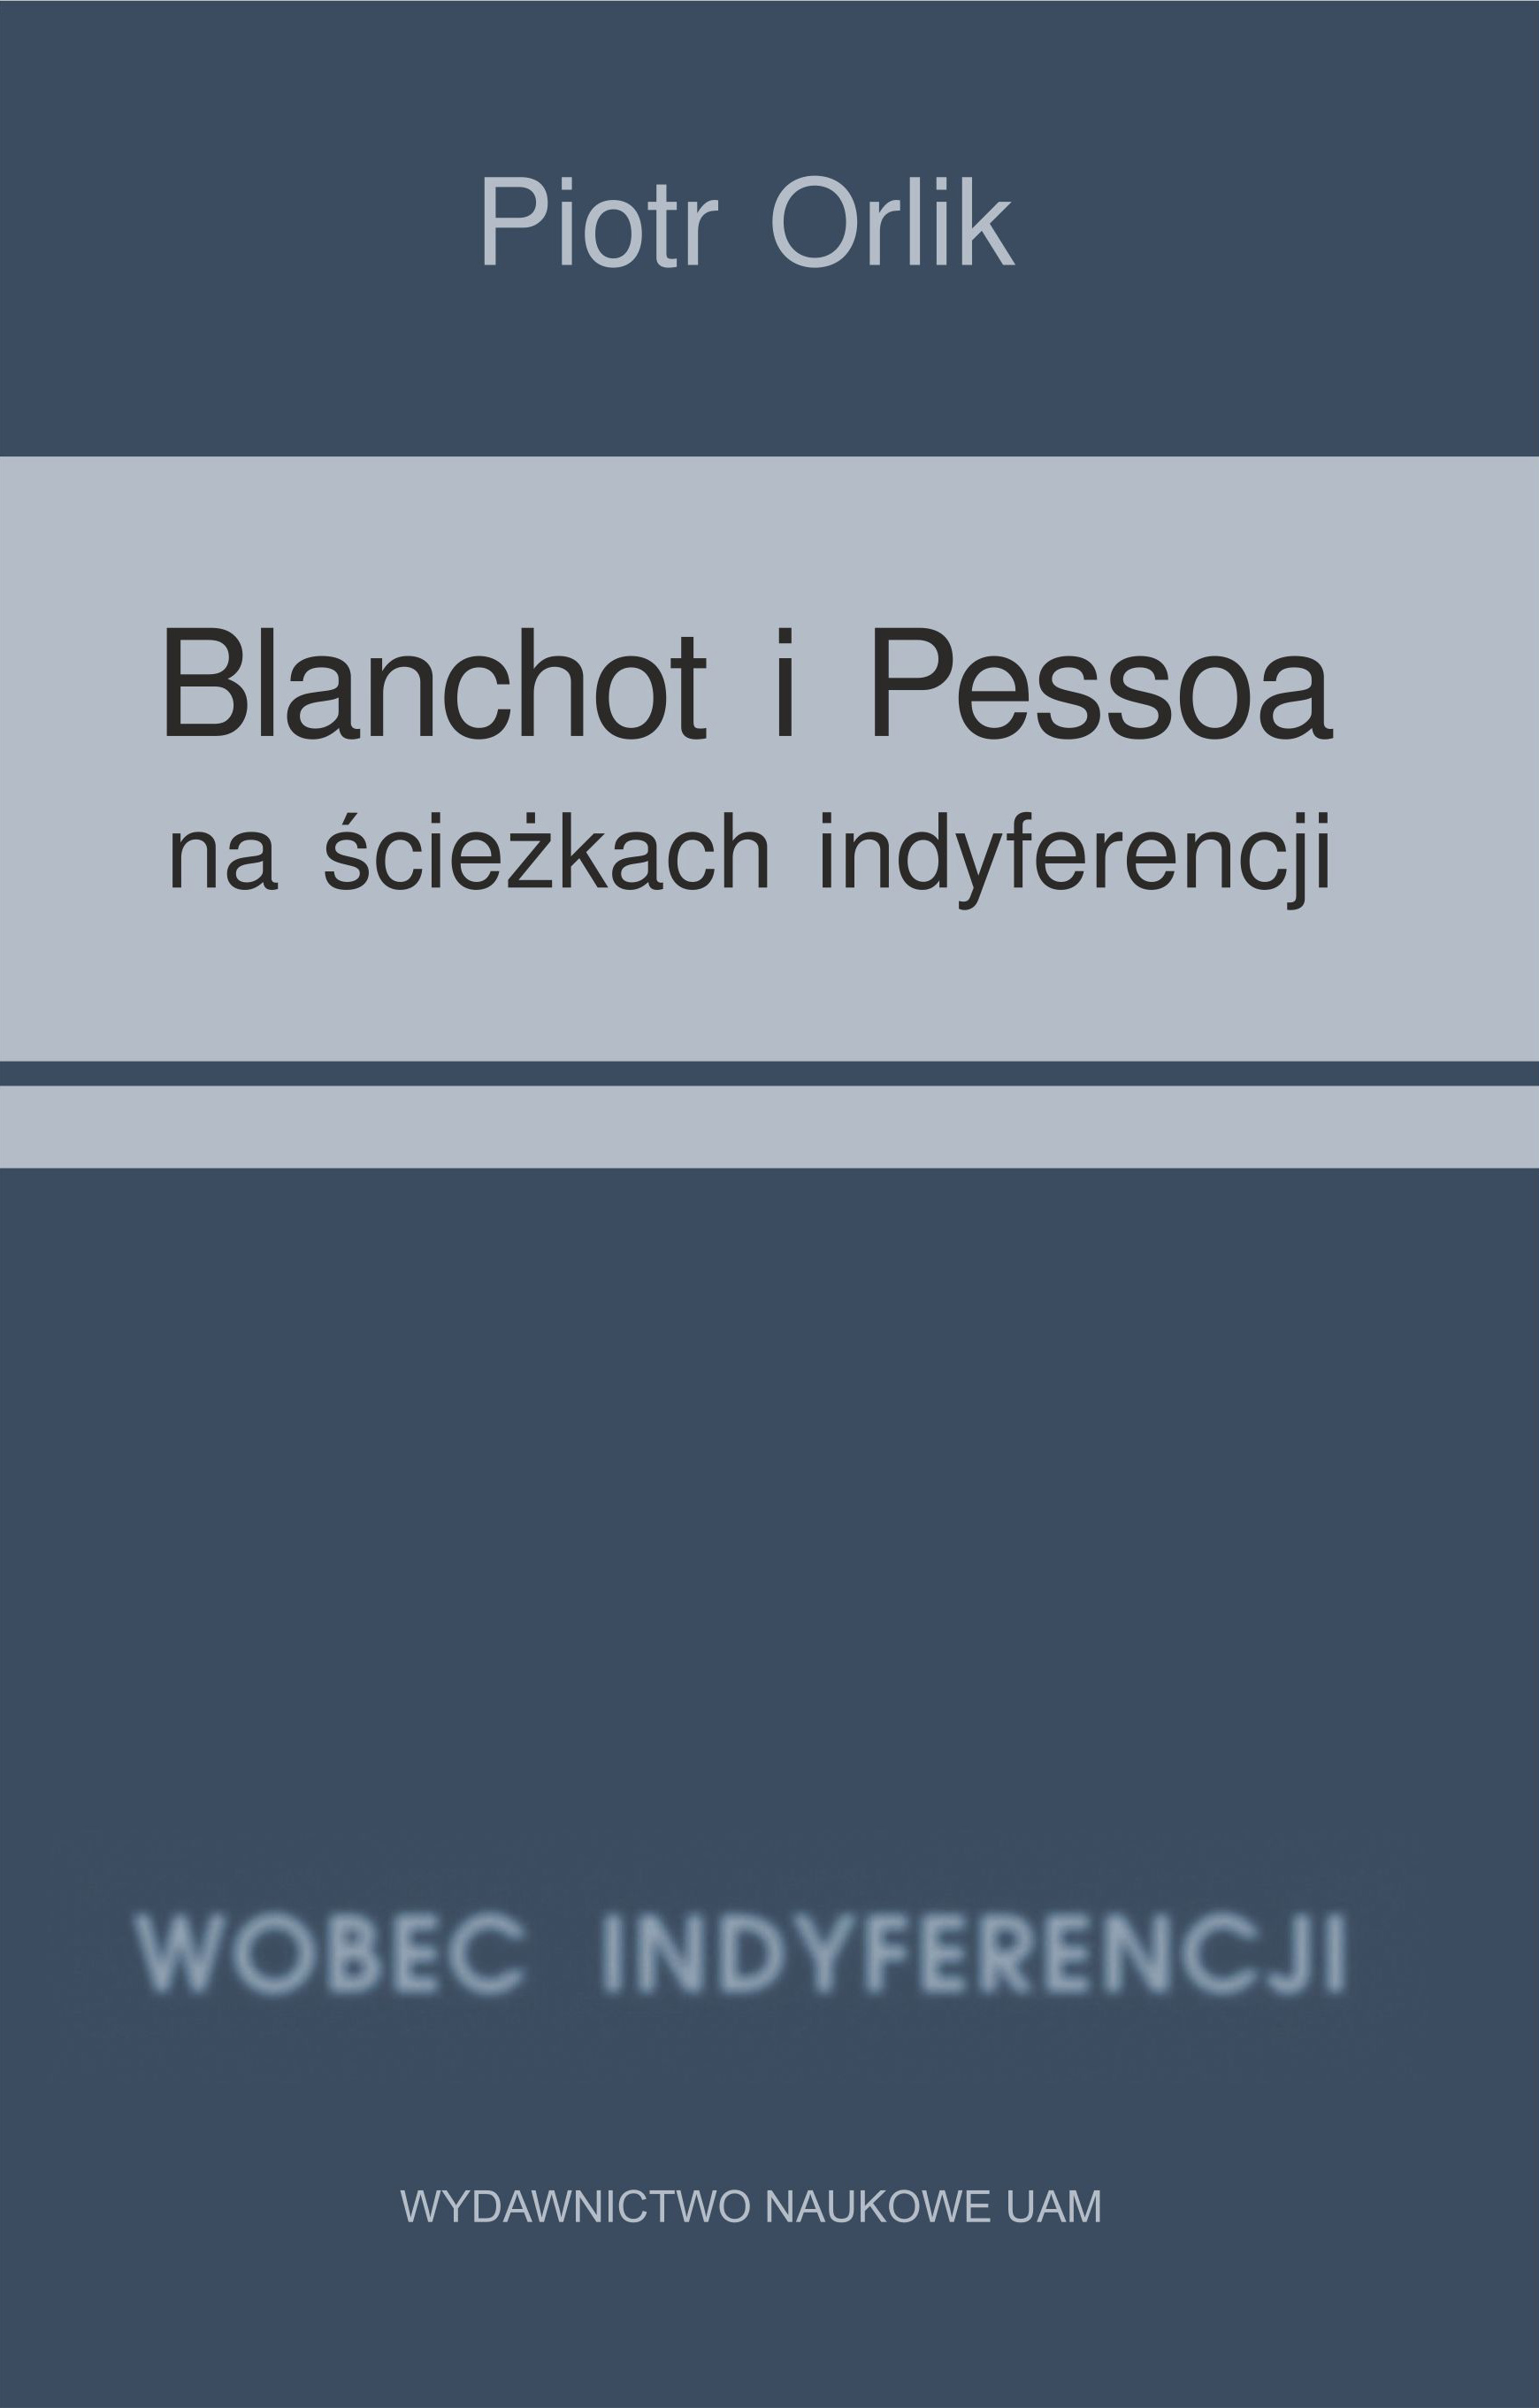 Blanchot i Pessoa na ścieżkach indyferencji  
(wyzwania tożsamościowe − retrospekcja indyferencji)